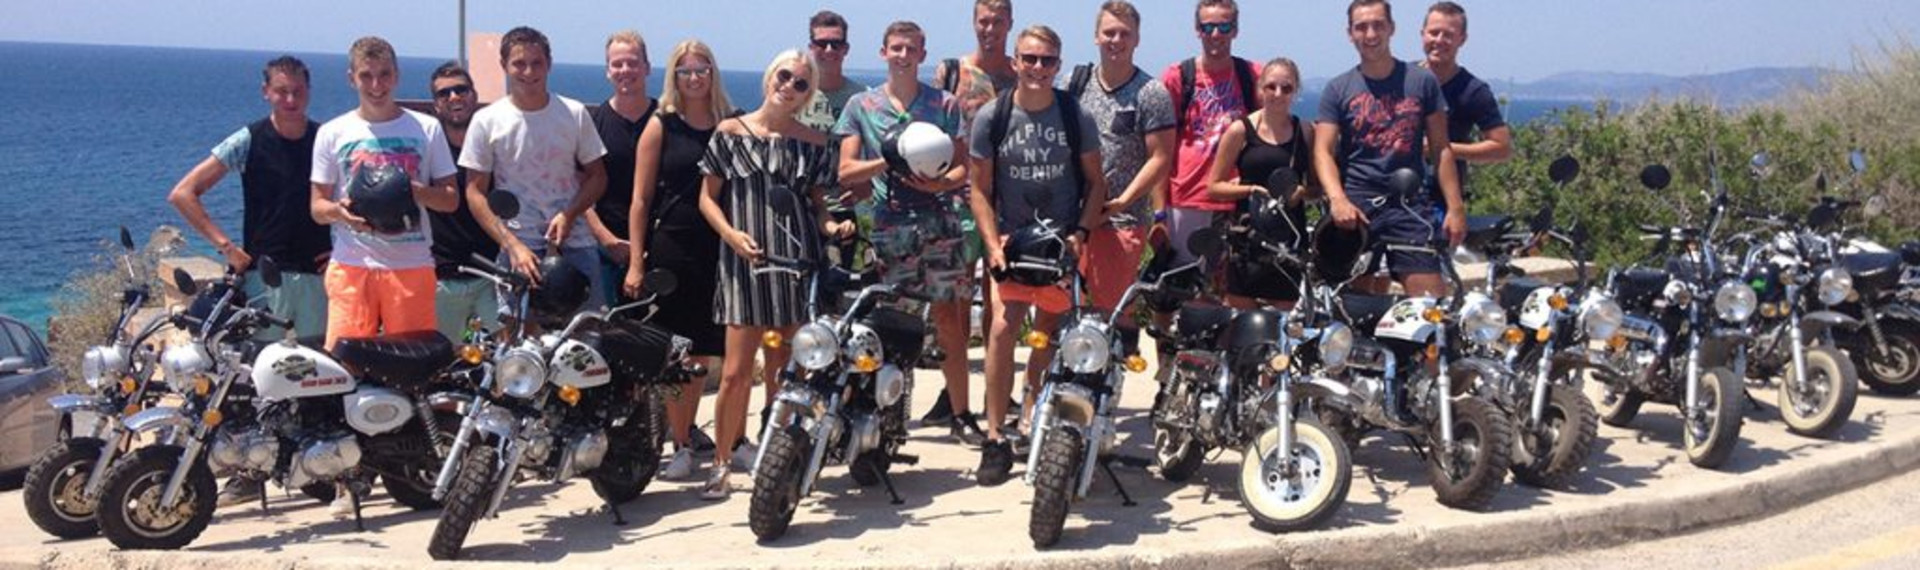 Monkey Bikes Tour auf Mallorca | Abenteuer mit Pissup Reisen